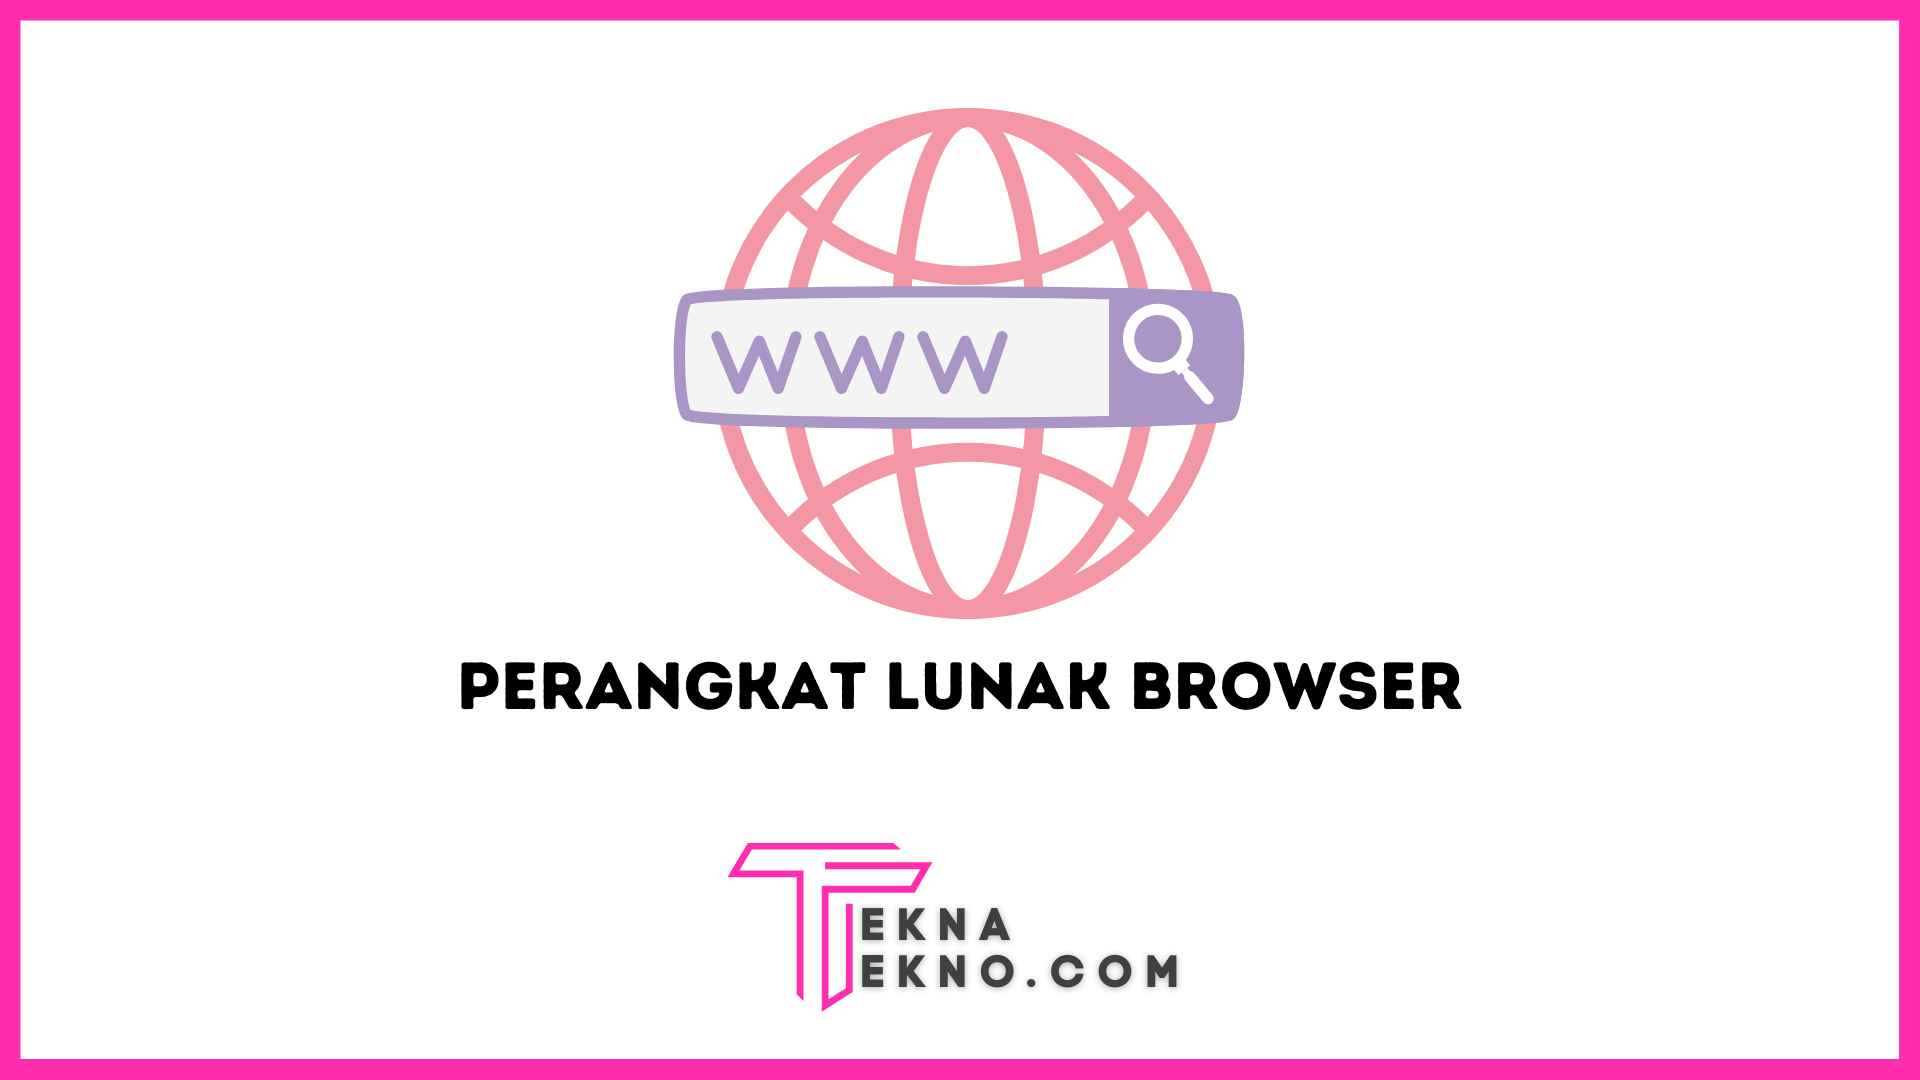 Perangkat Lunak Browser Definisi, Fungsi dan Jenisnya